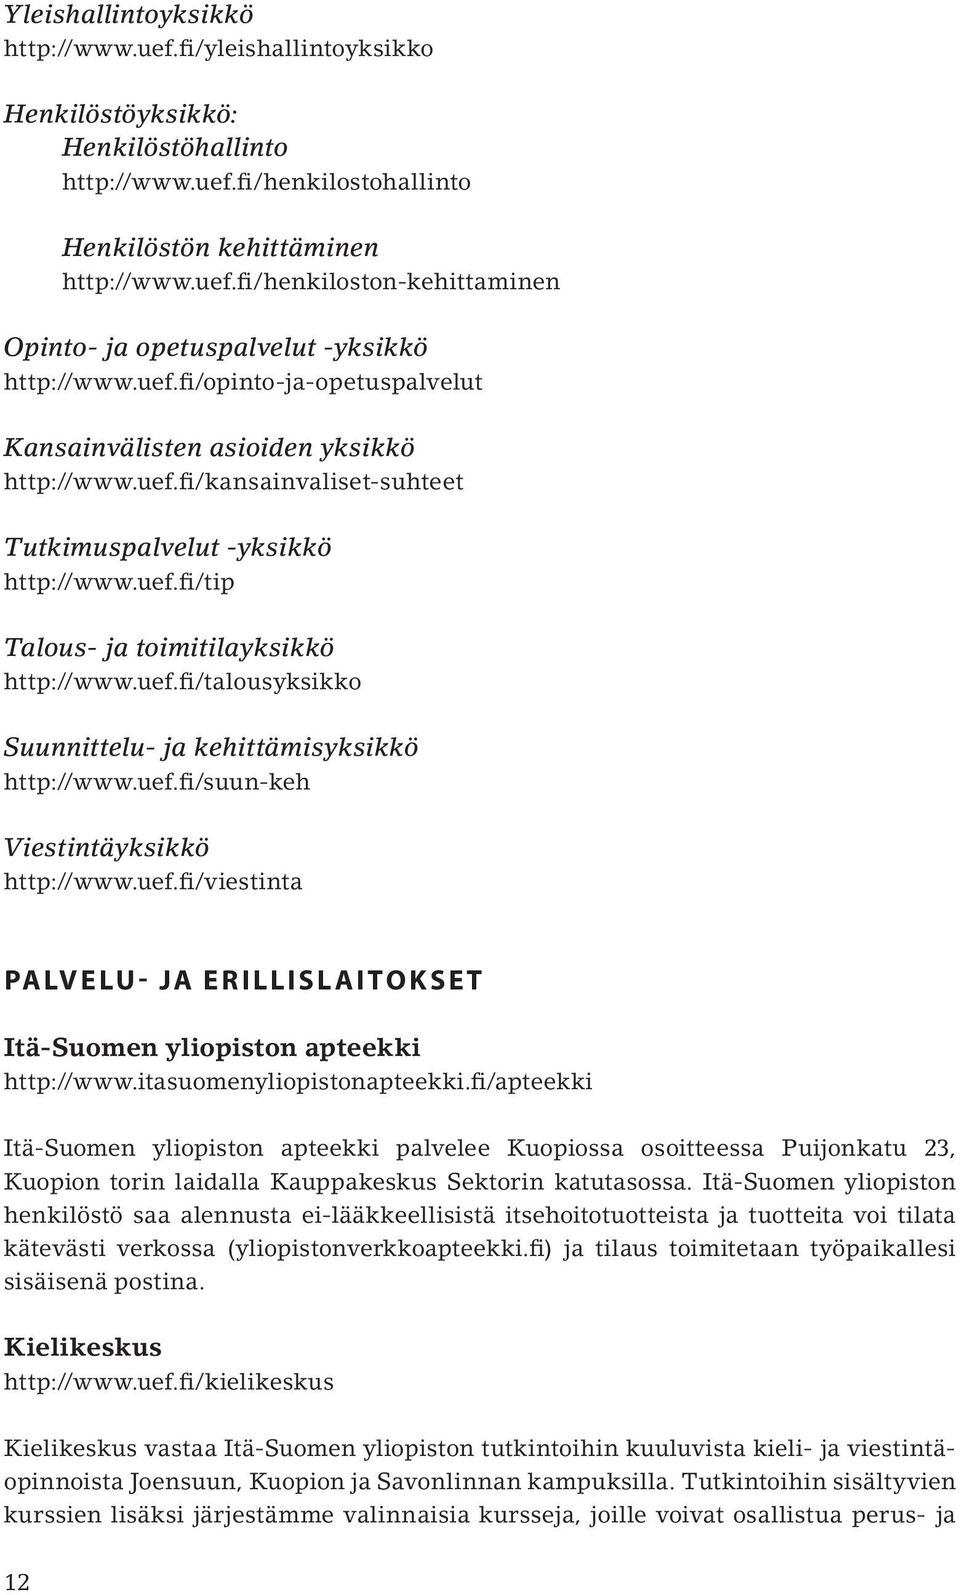 uef.fi/suun-keh Viestintäyksikkö http://www.uef.fi/viestinta PALVELU- JA ERILLISLAITOKSET Itä-Suomen yliopiston apteekki http://www.itasuomenyliopistonapteekki.